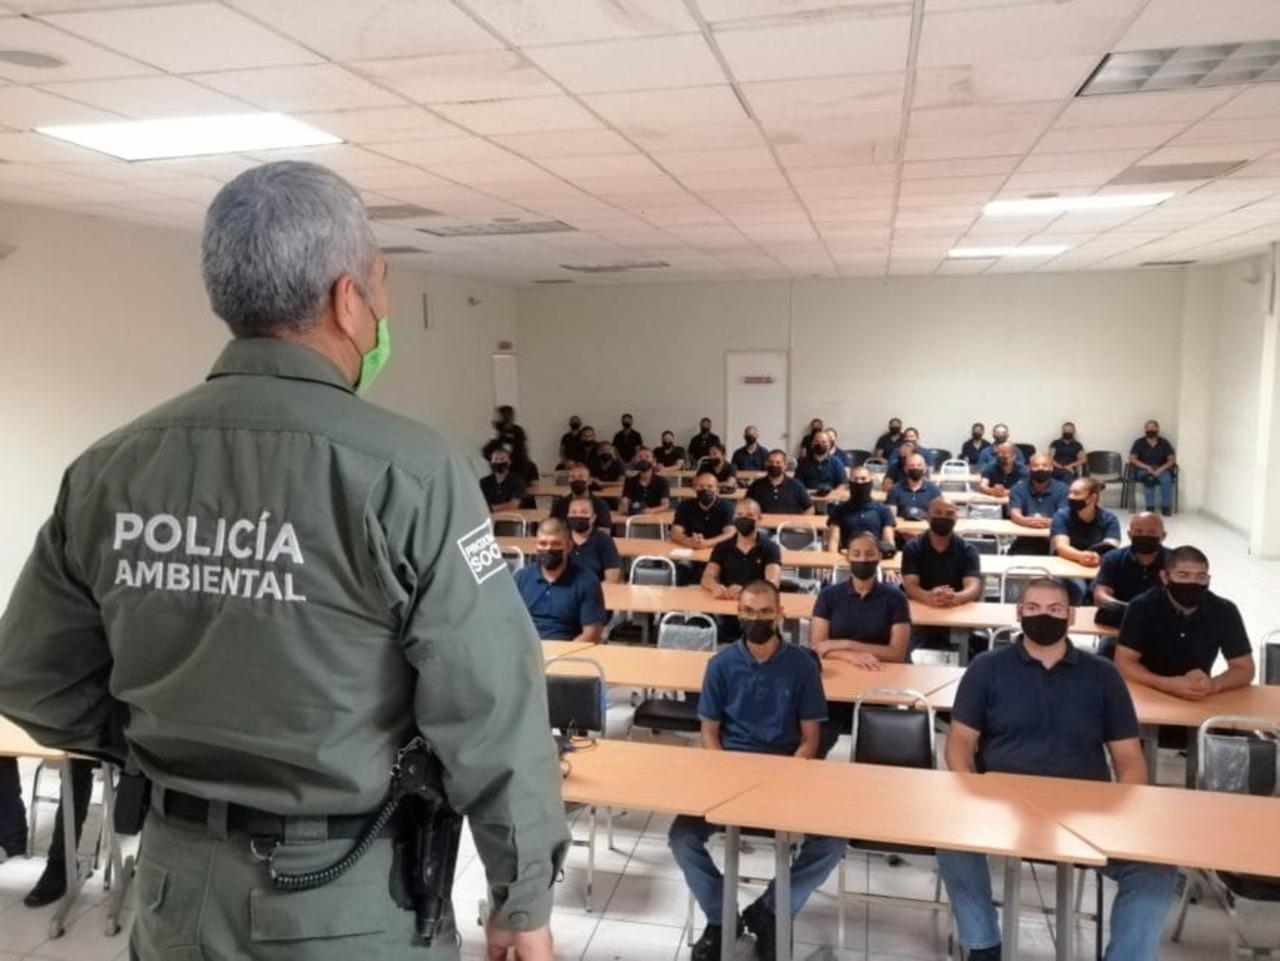 La formación de los cadetes inició el 28 de junio y comprende clases teóricas y prácticas certificadas por el Secretariado Ejecutivo del Sistema Nacional de Seguridad Pública.